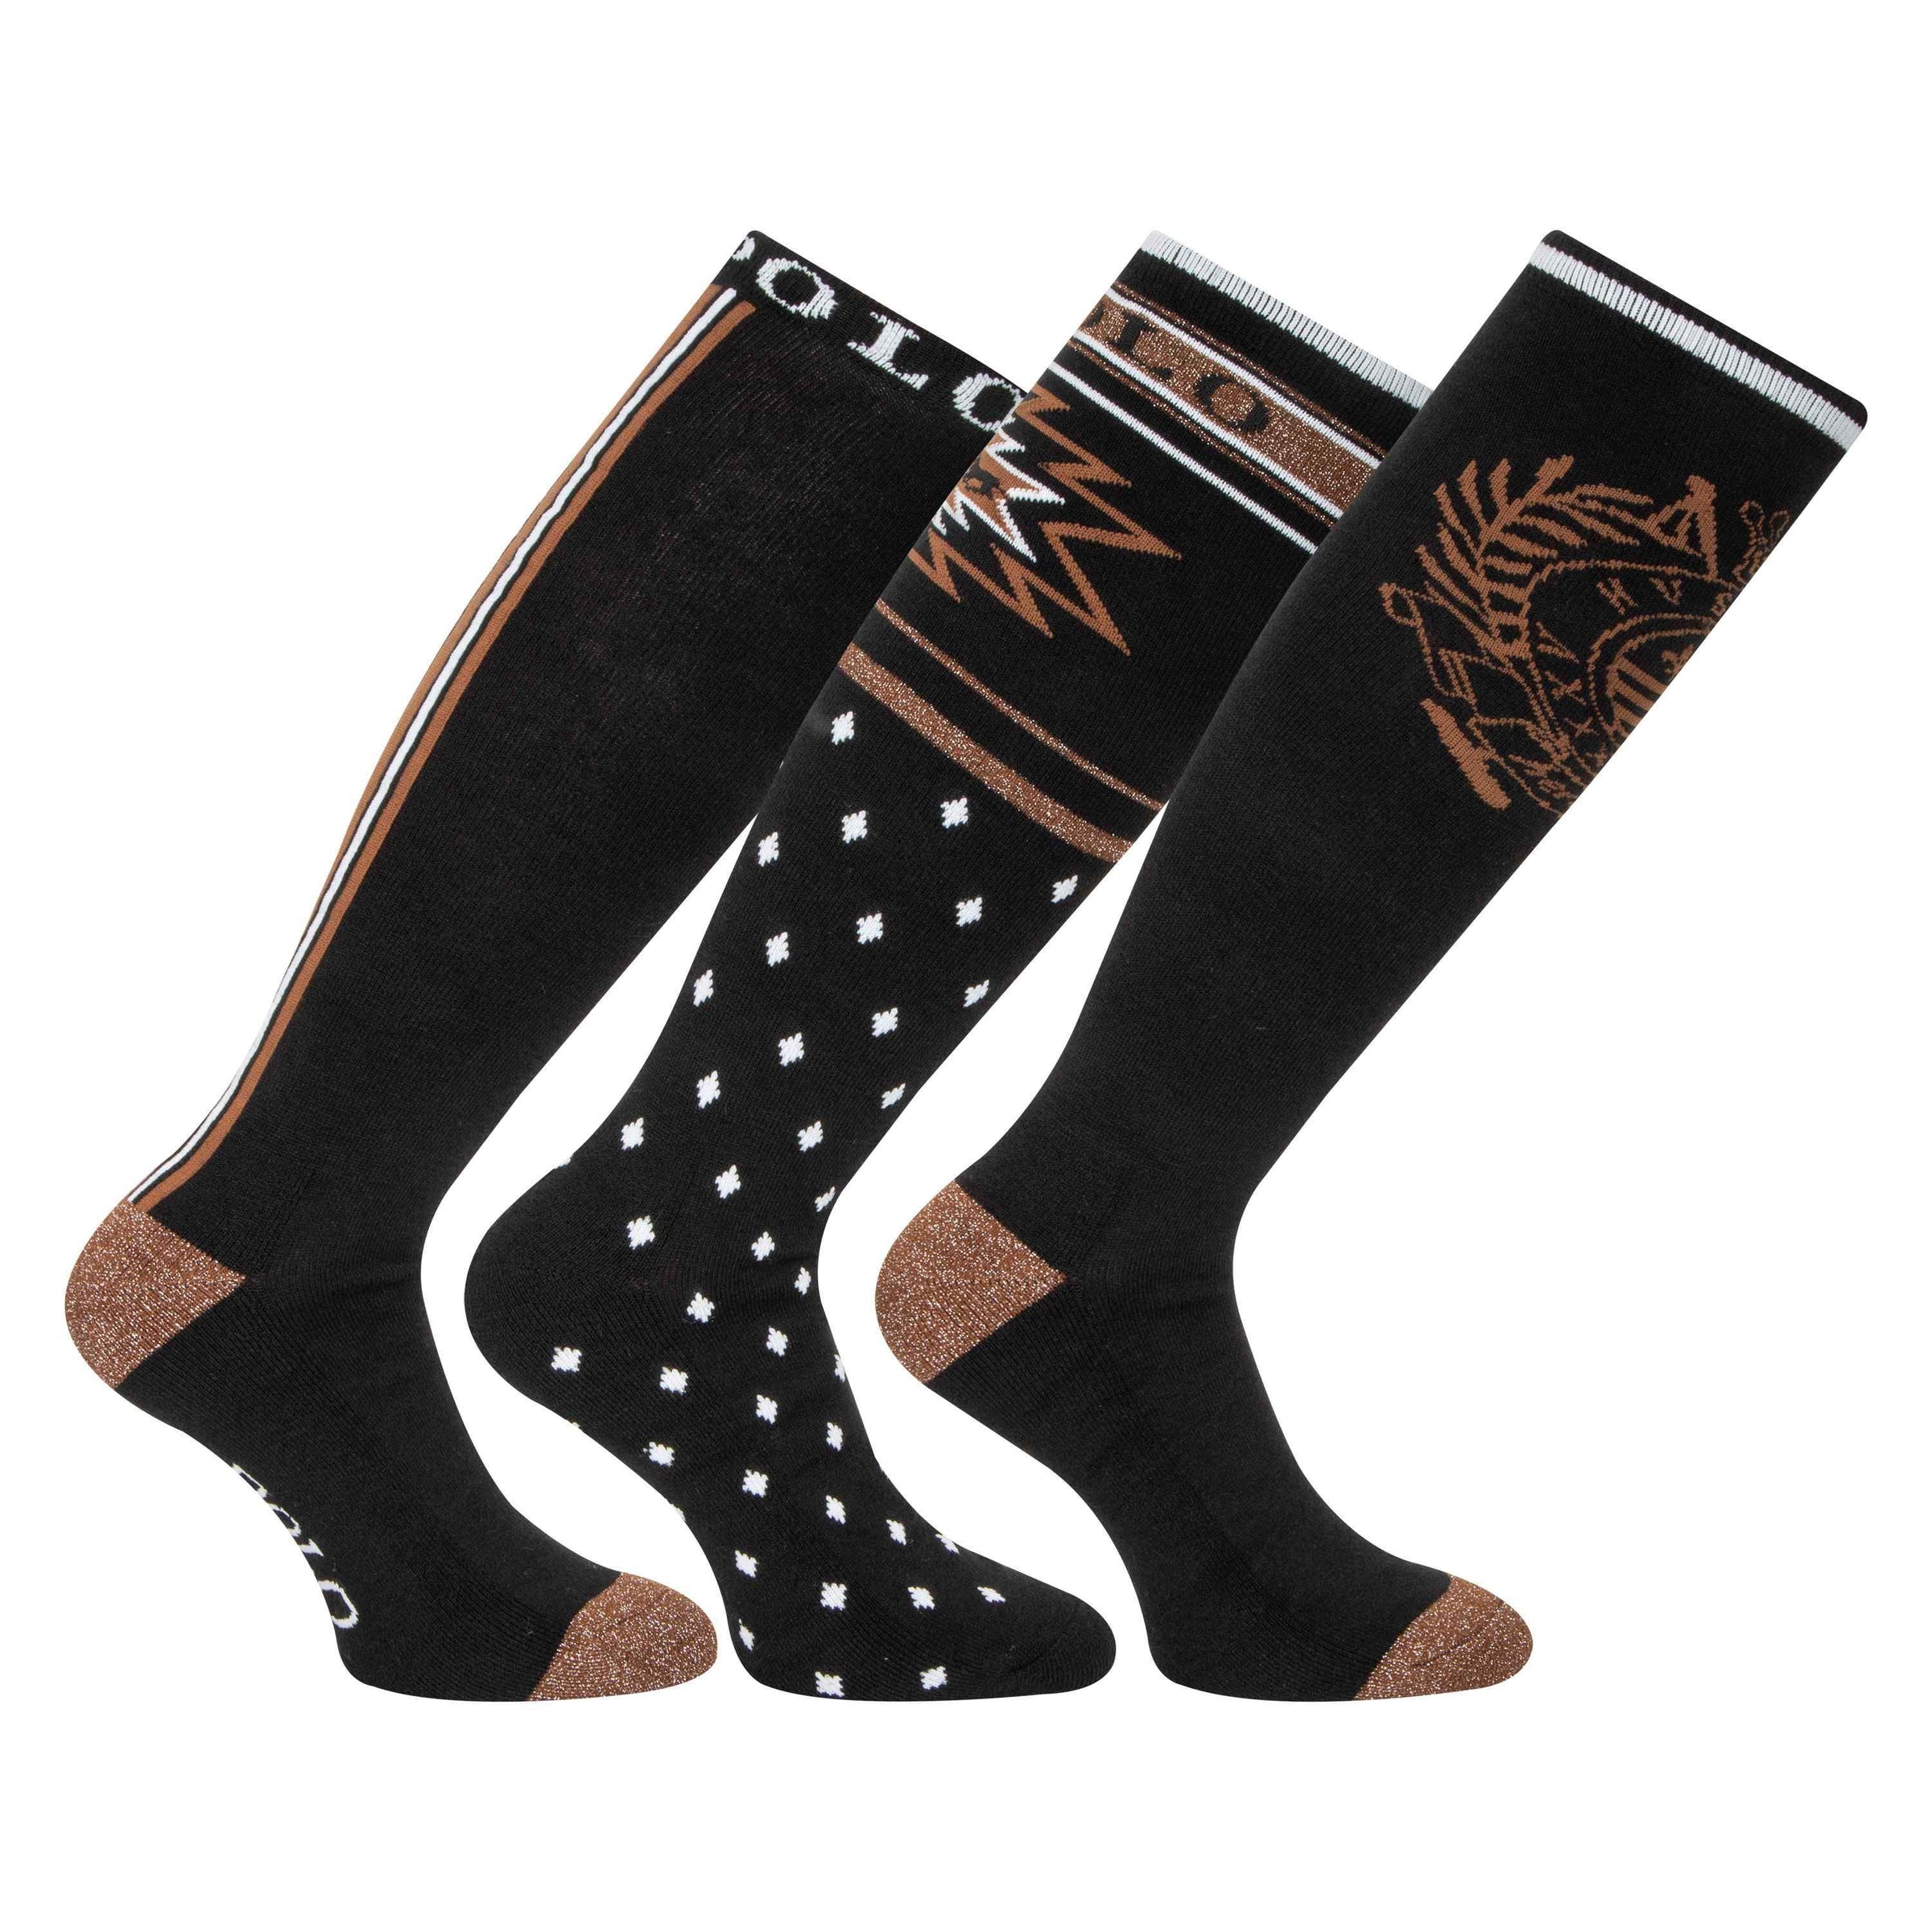 HV Polo black copper multipack socks- pack of 3 pairs